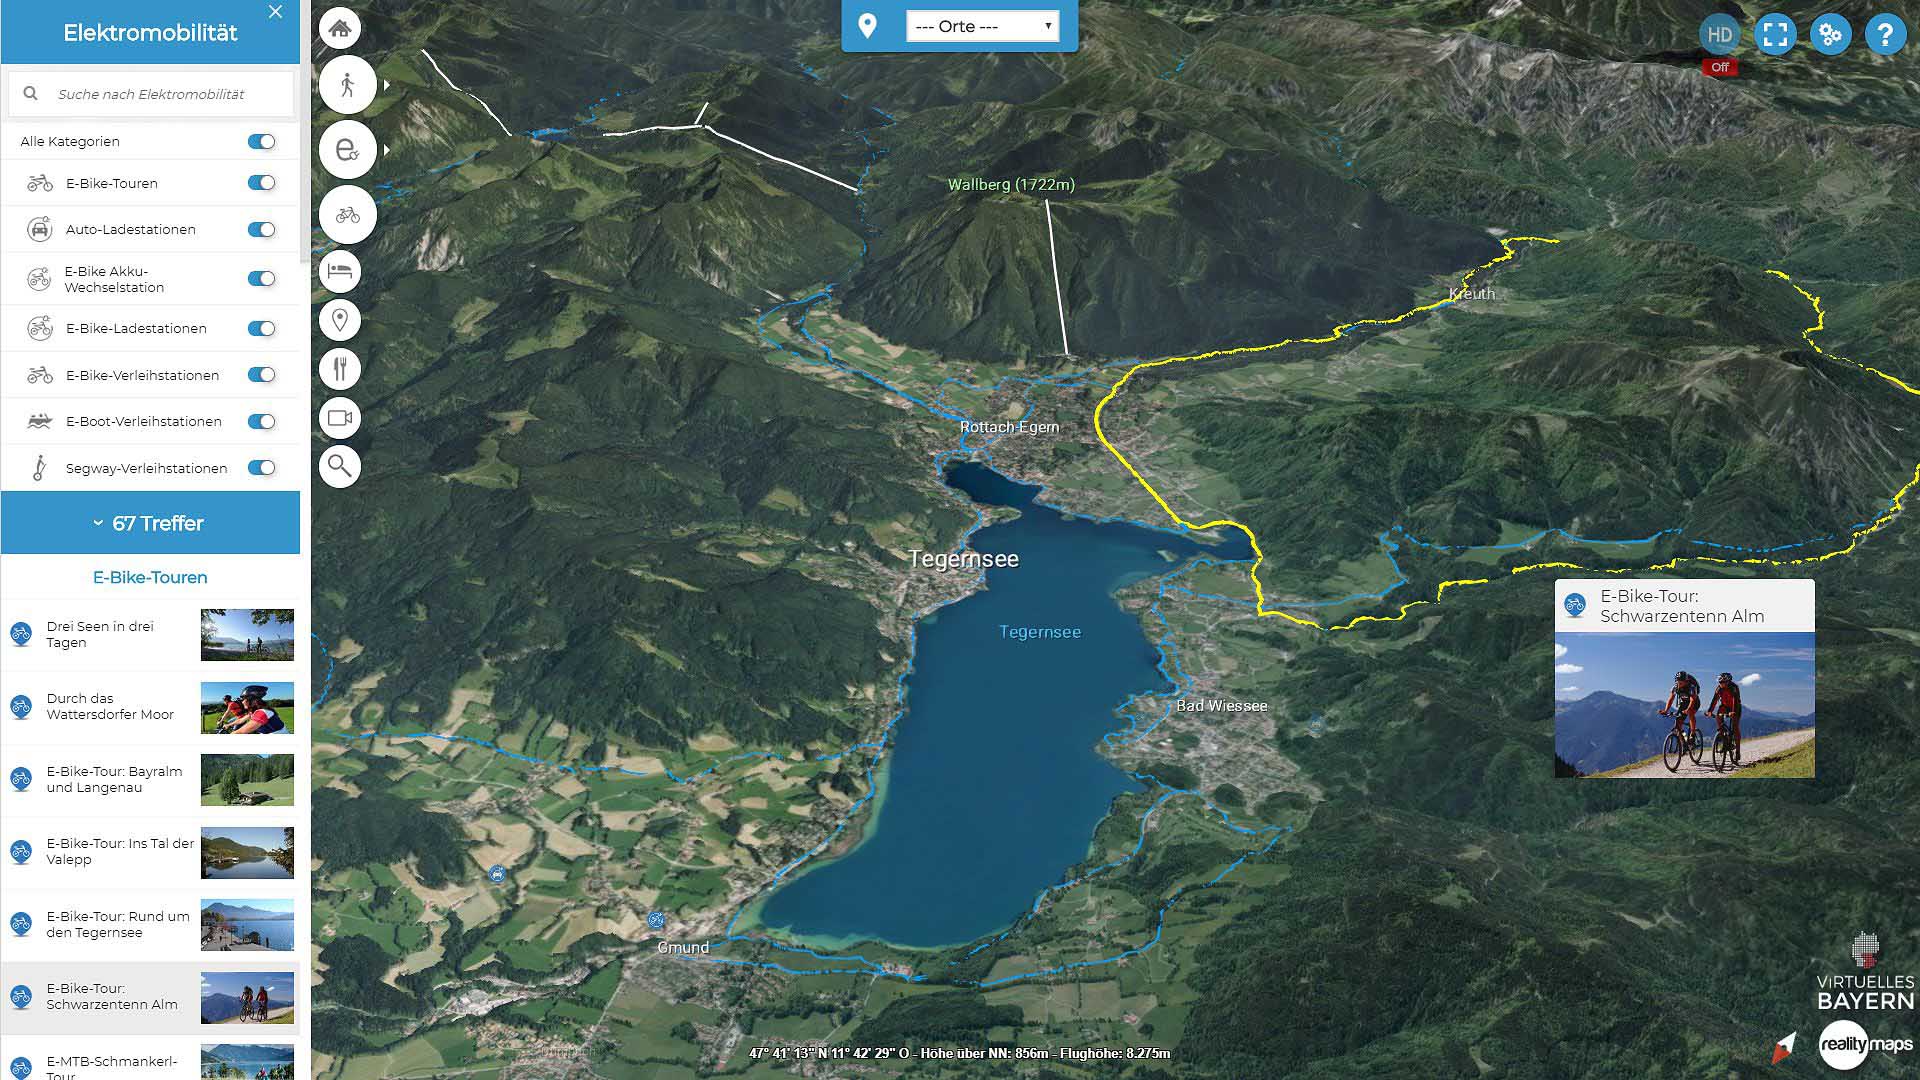 Interaktive Karte zum eBiken am Tegernsee